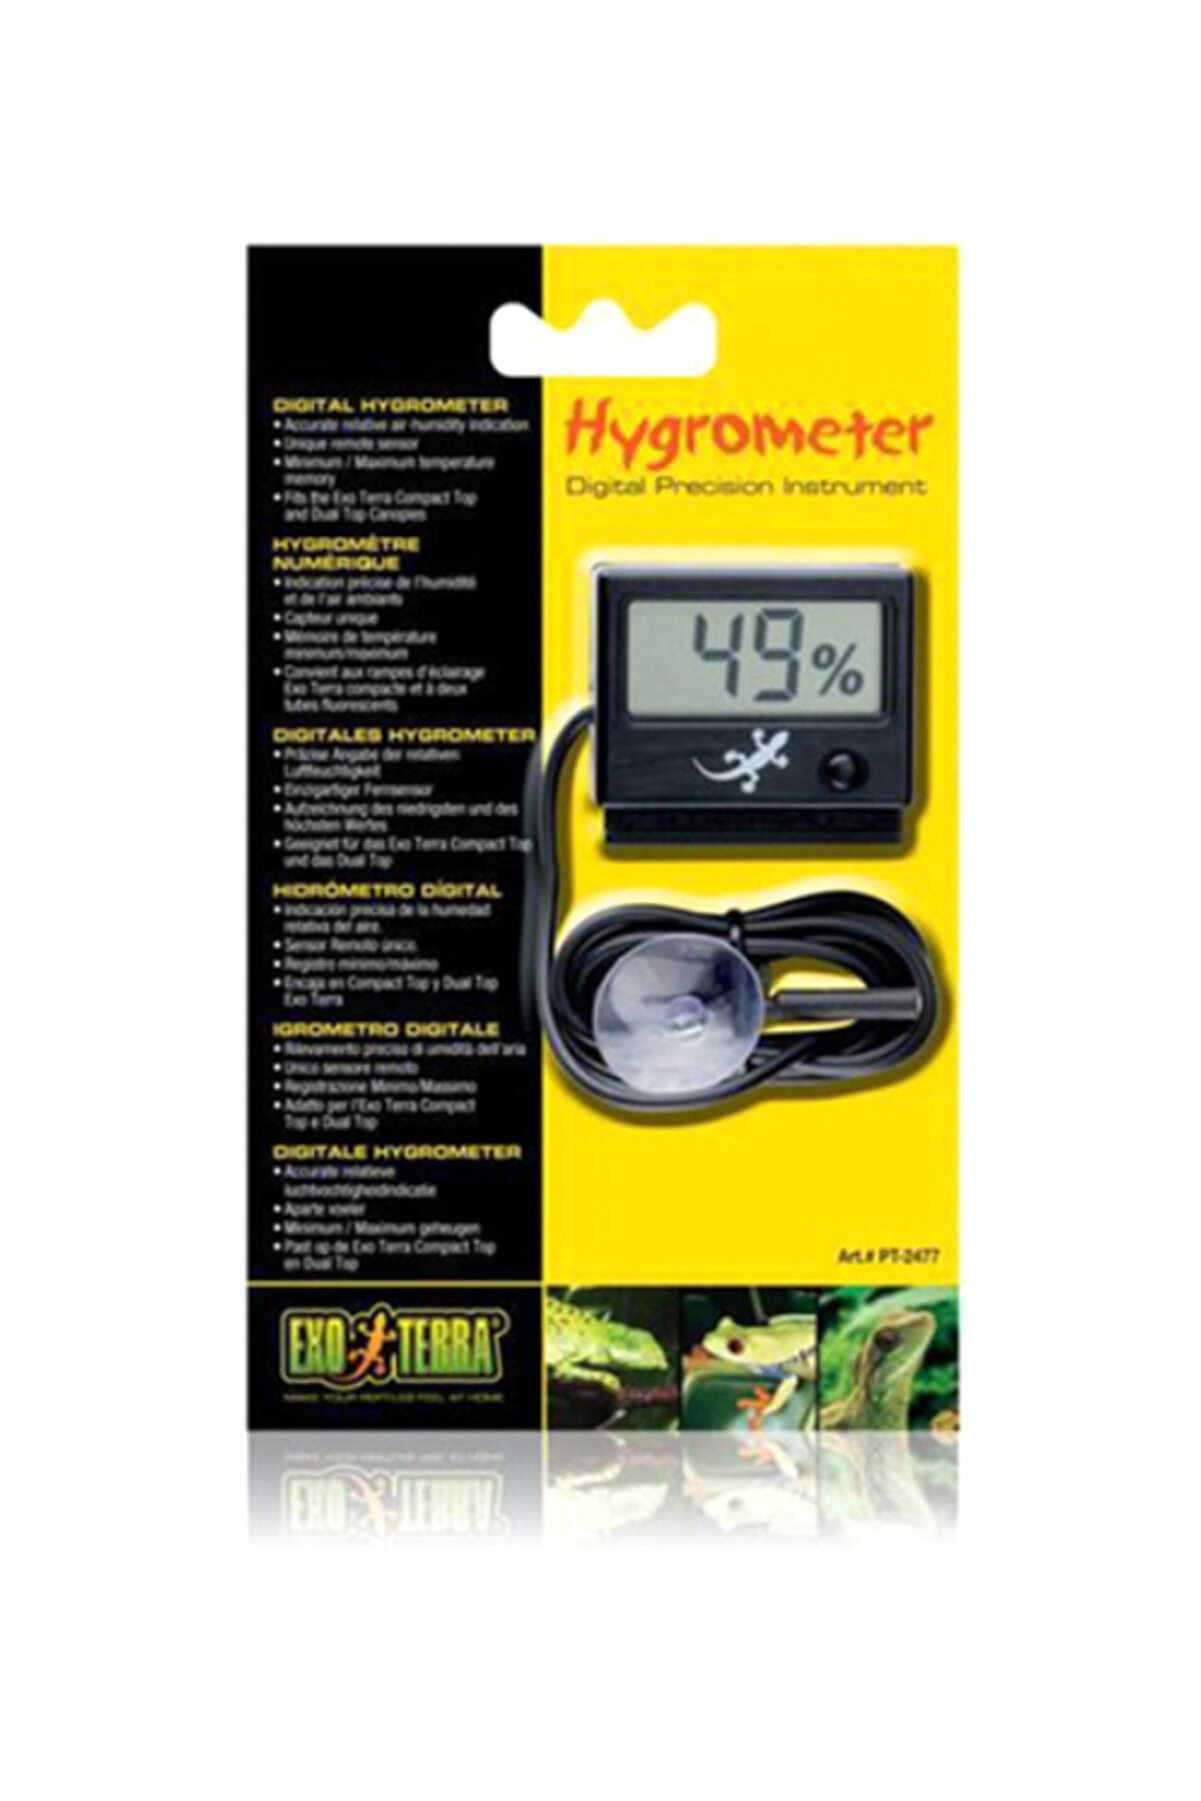 Exo Terra Digital Hygrometer - Nem Ölçer